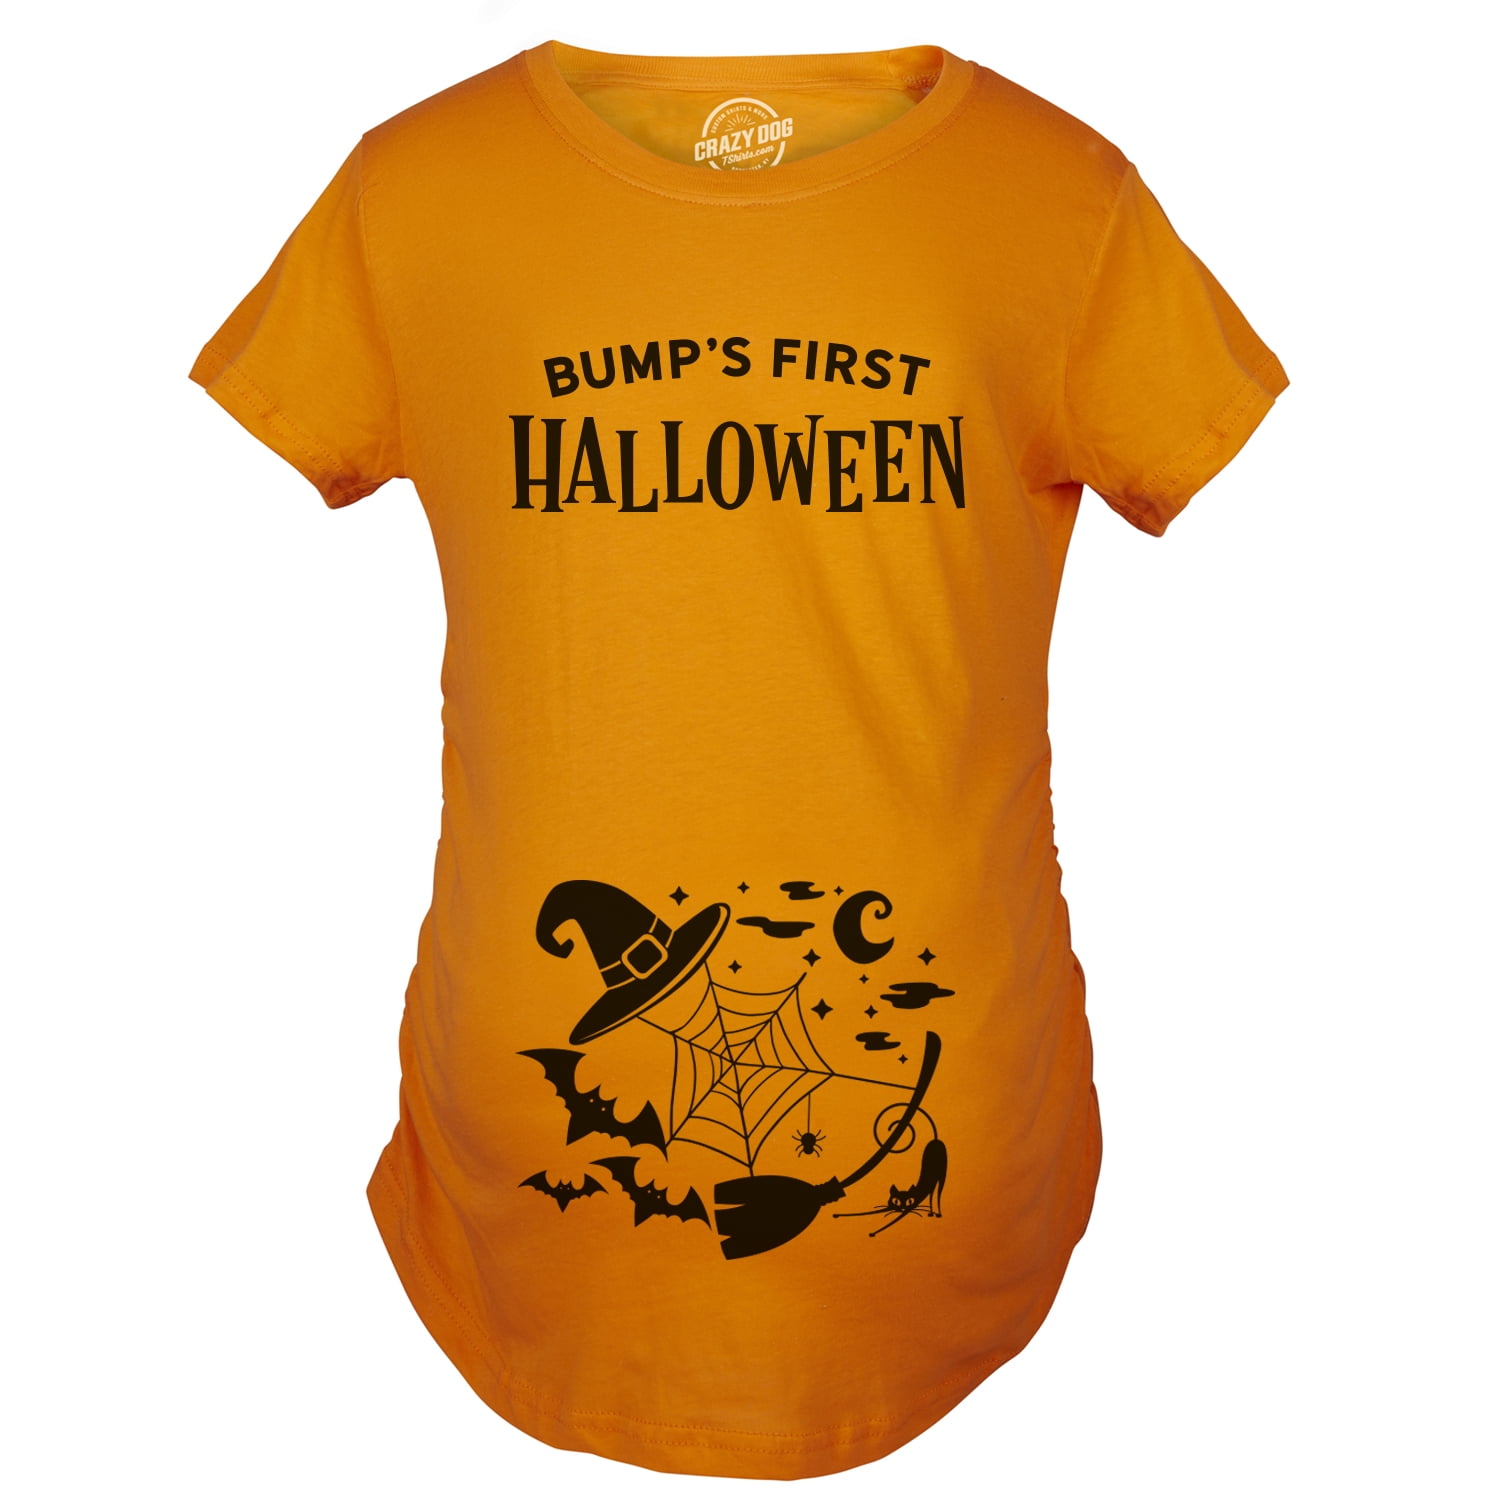 October Shirt Spooky Party Pumpkin Shirt Family Halloween Shirt Fall Shirt Spooky Season Shirt Halloween Shirt Spooky Squad Shirt